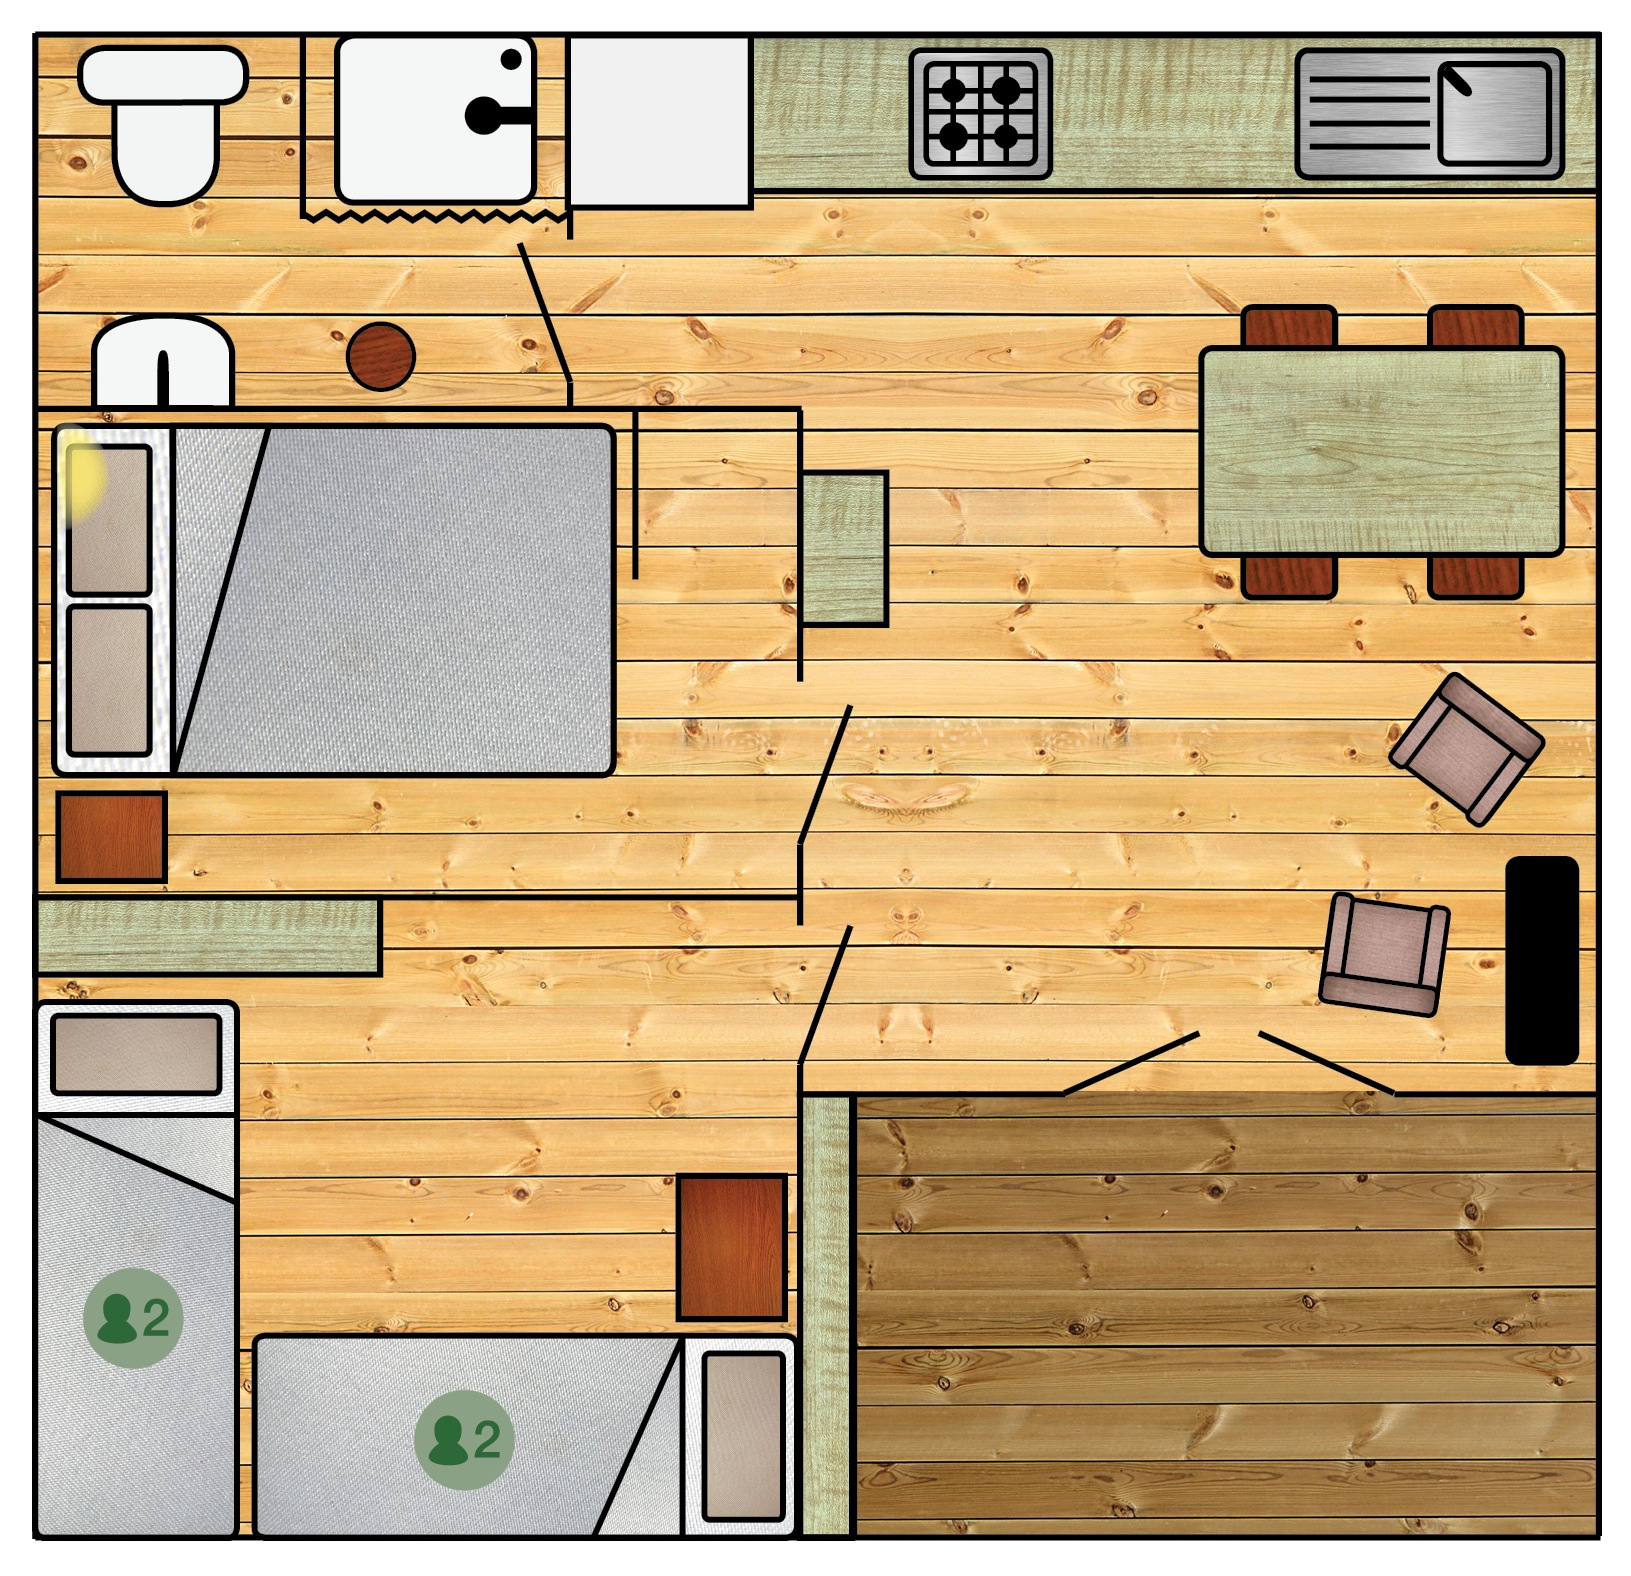 De blokhut beschikt over een woonkeuken, twee slaapkamers en een badkamer en is daarmee geschikt voor maximaal 6 personen.